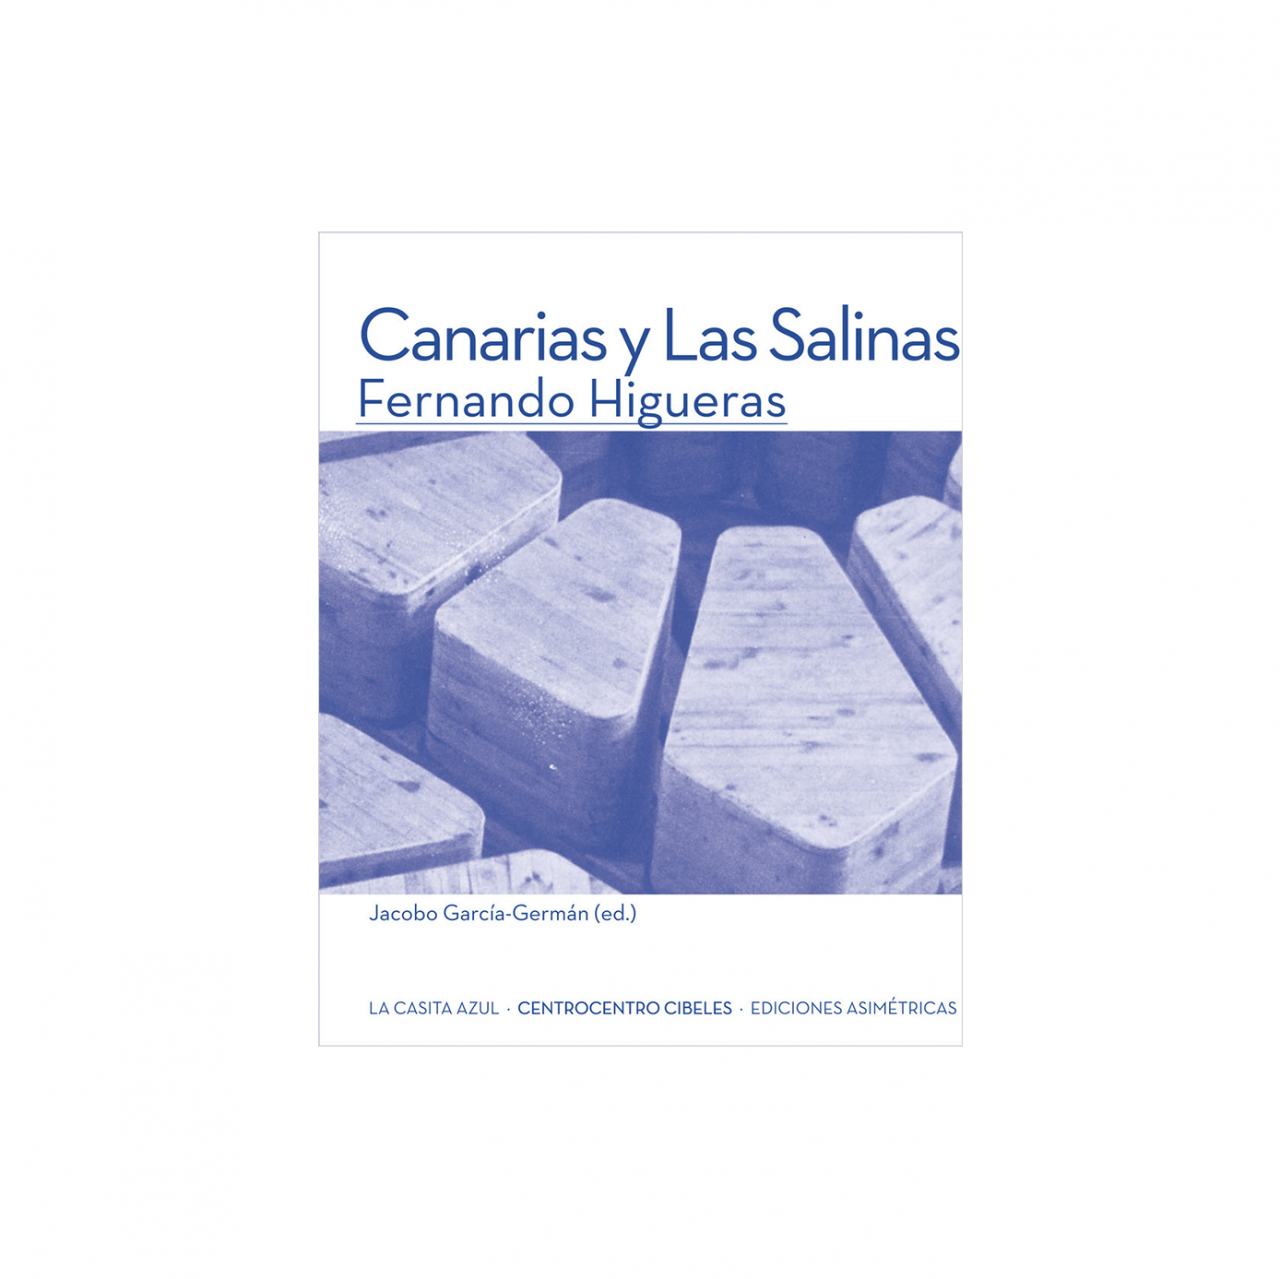 GARCIAGERMAN ARQUITECTOS Canarias y Las Salinas. Fernando Higueras